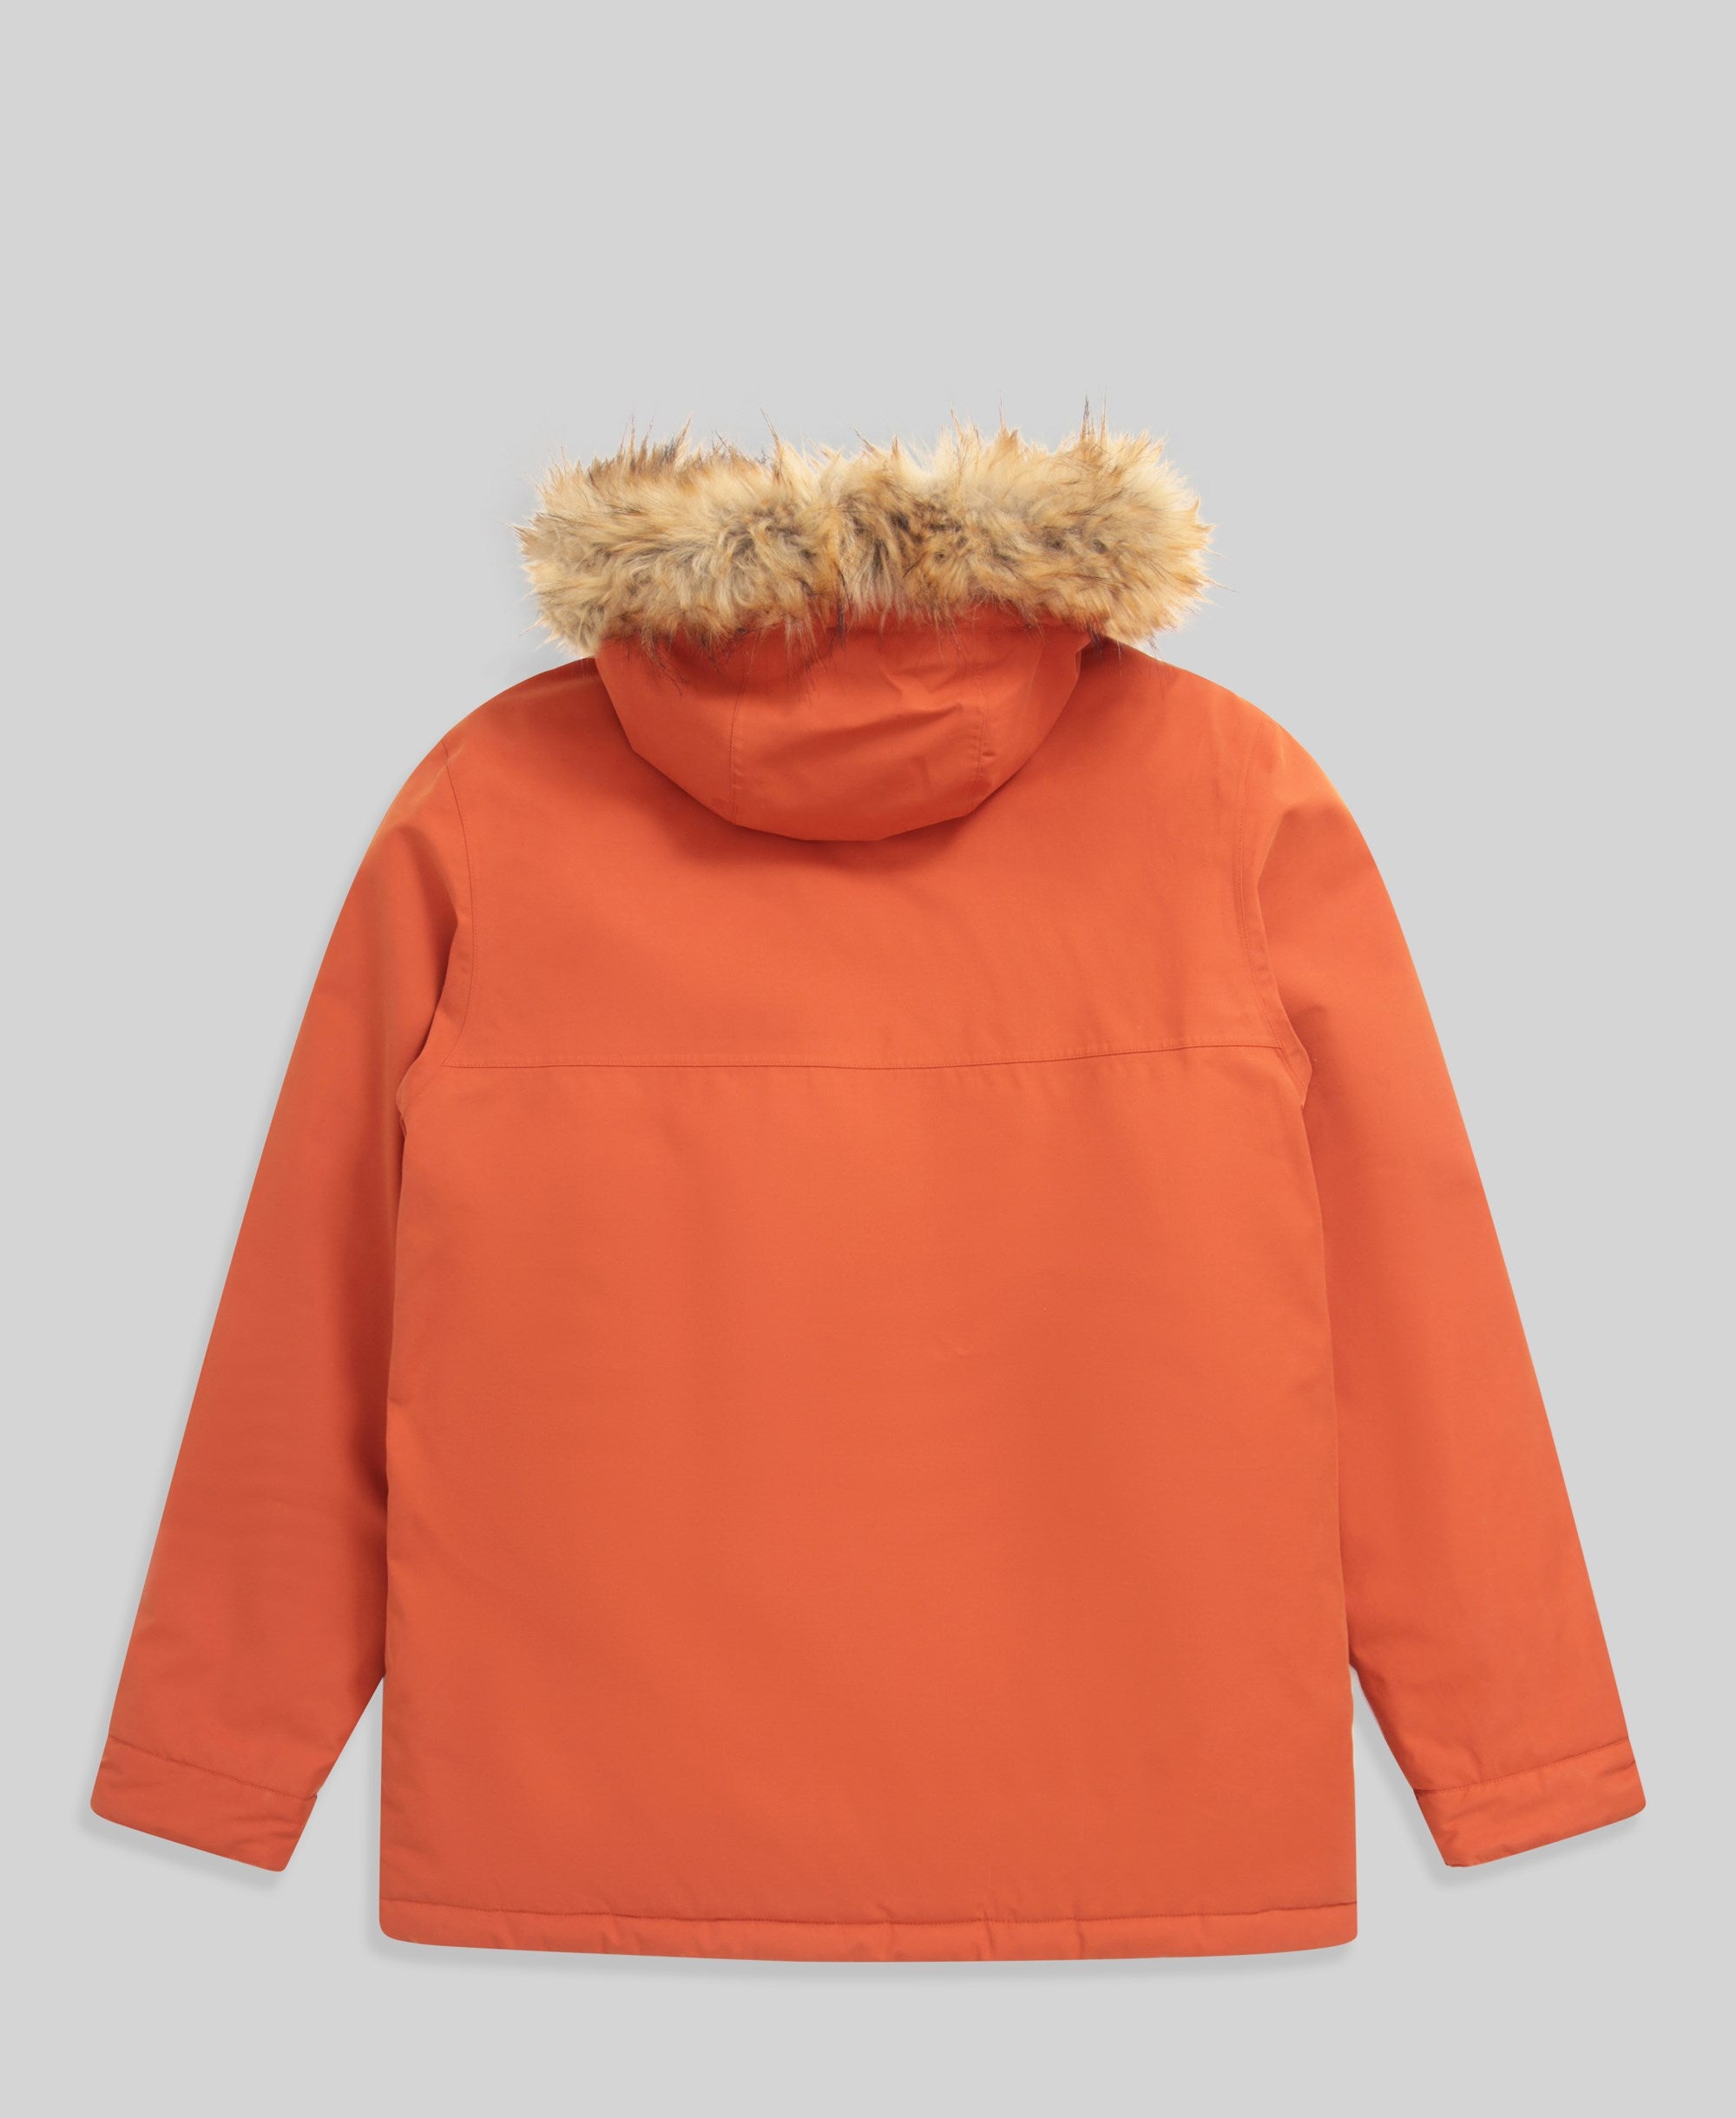 Whitsand Mens Sherpa Jacket - Orange